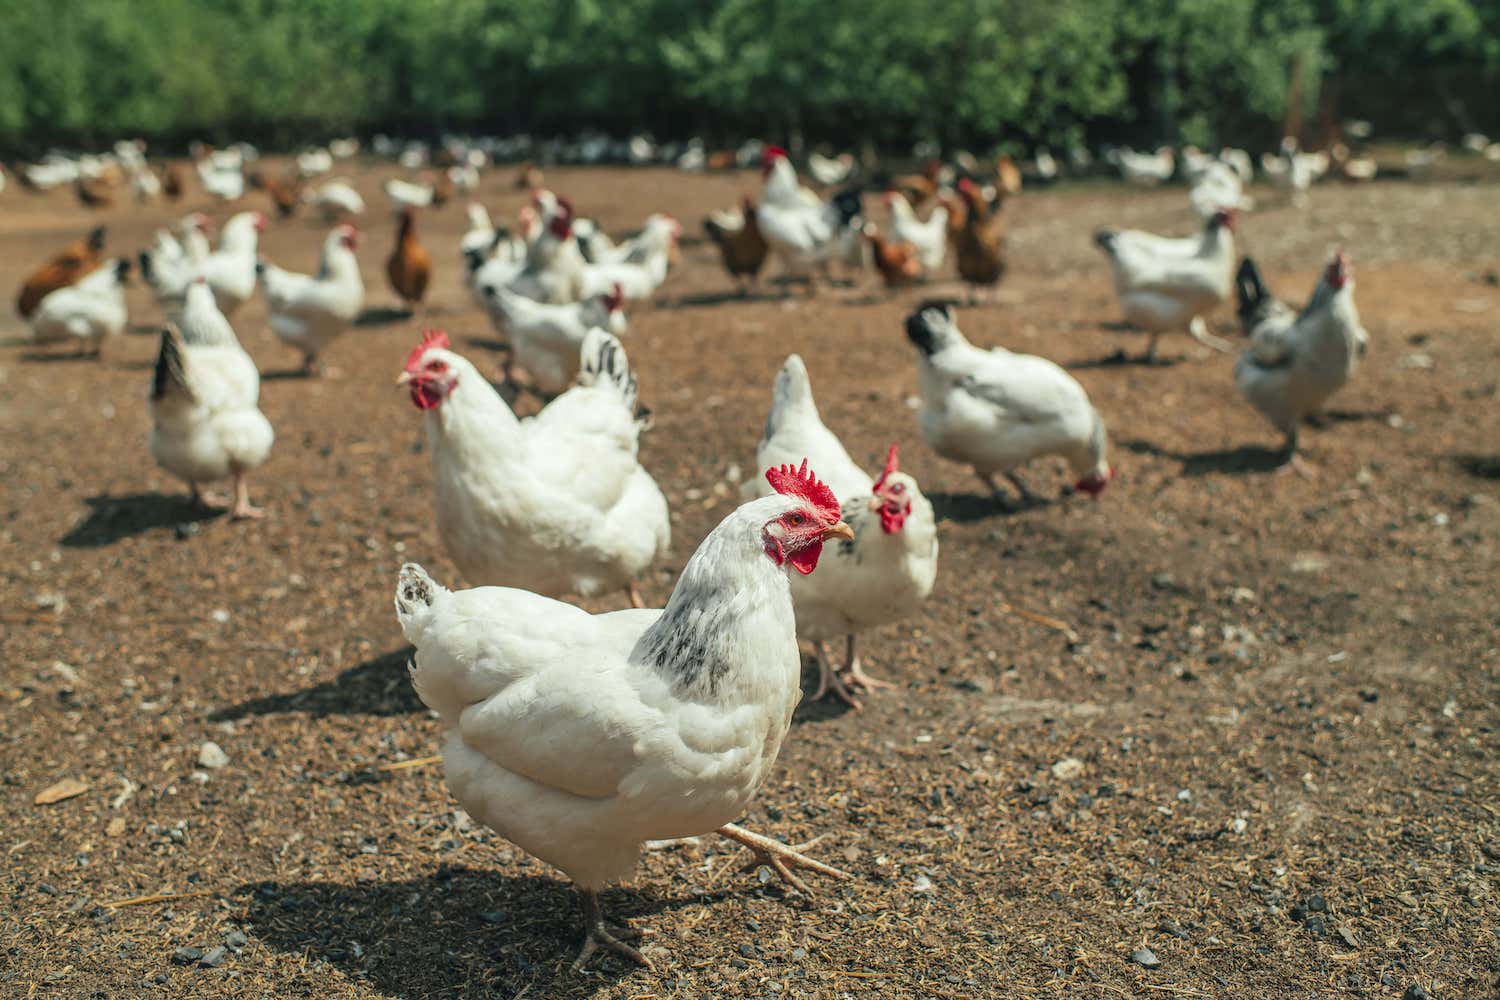 Khu vực chăn nuôi gà thả vườn phải được sạch sẽ